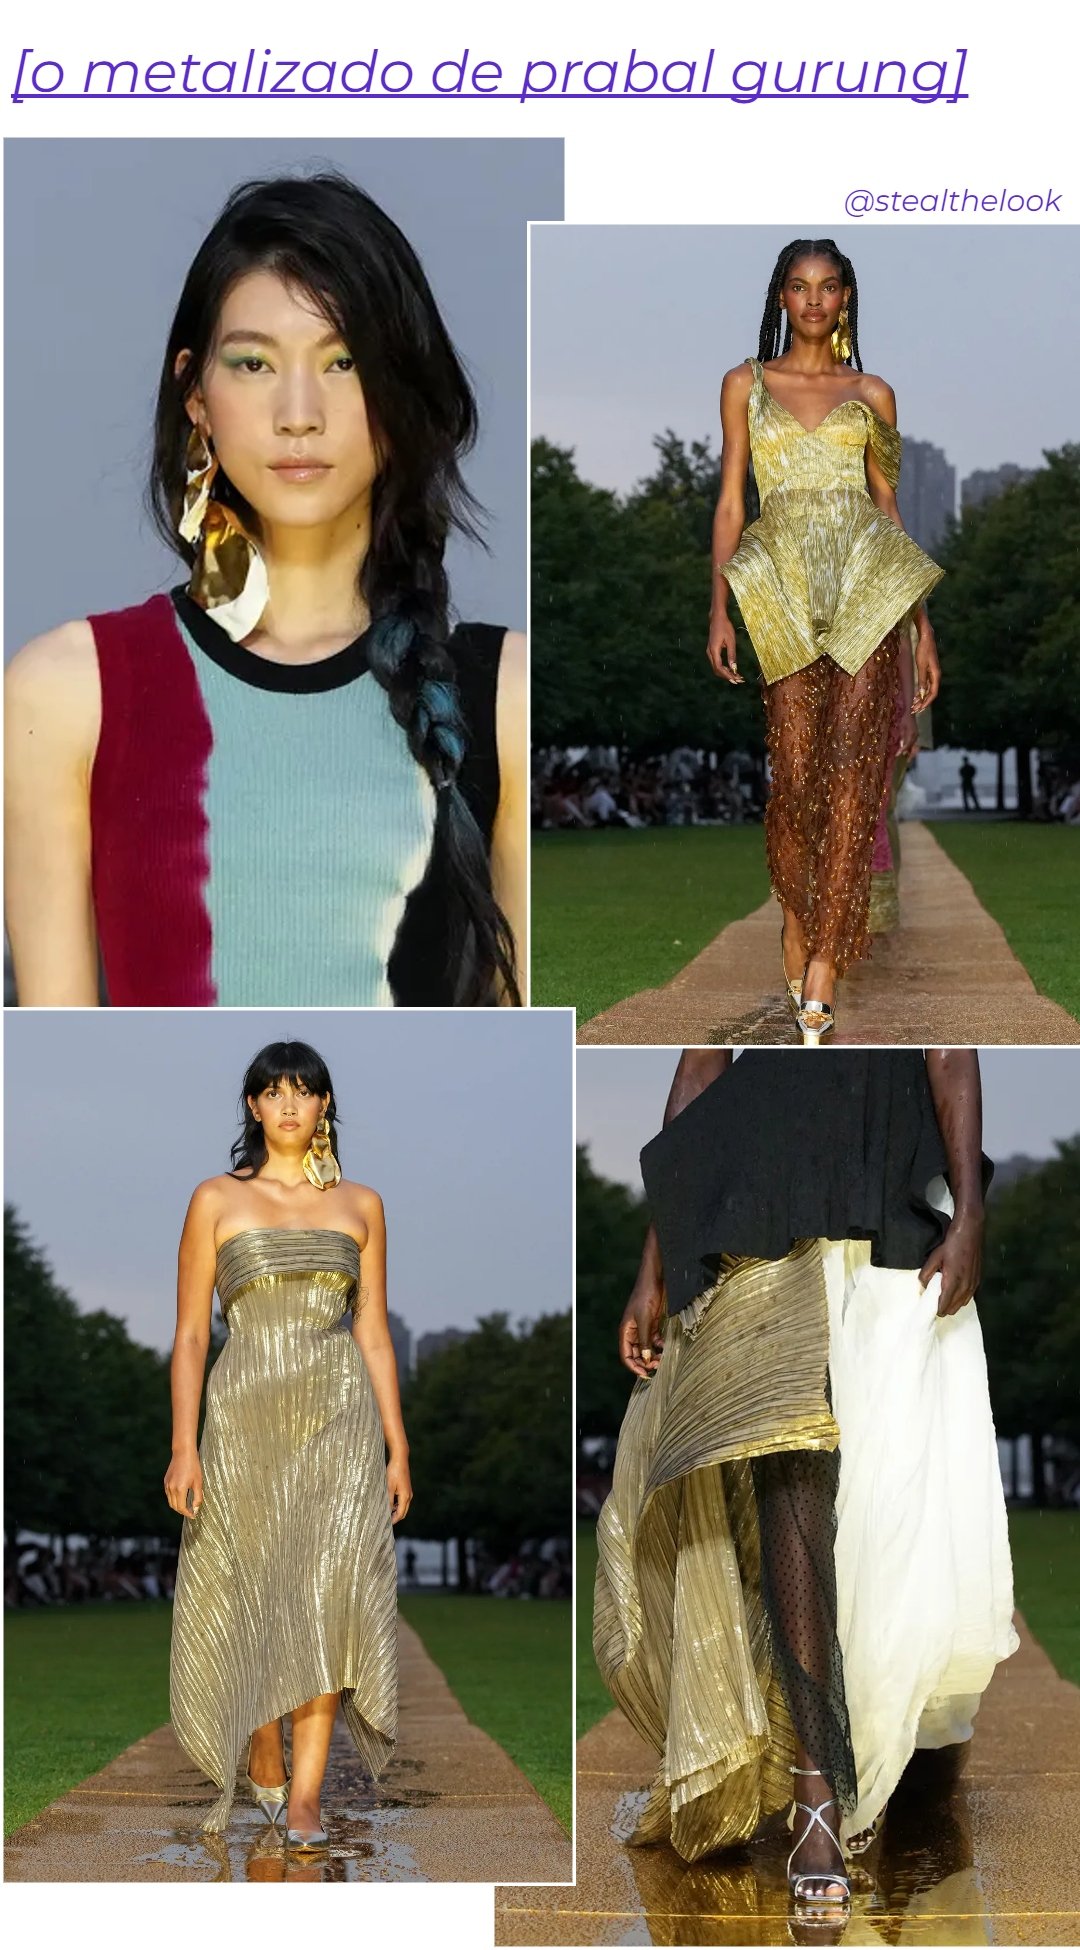 Prabal Gurung - roupas diversas metalizadas - NYFW - primavera - colagem de imagens - https://stealthelook.com.br